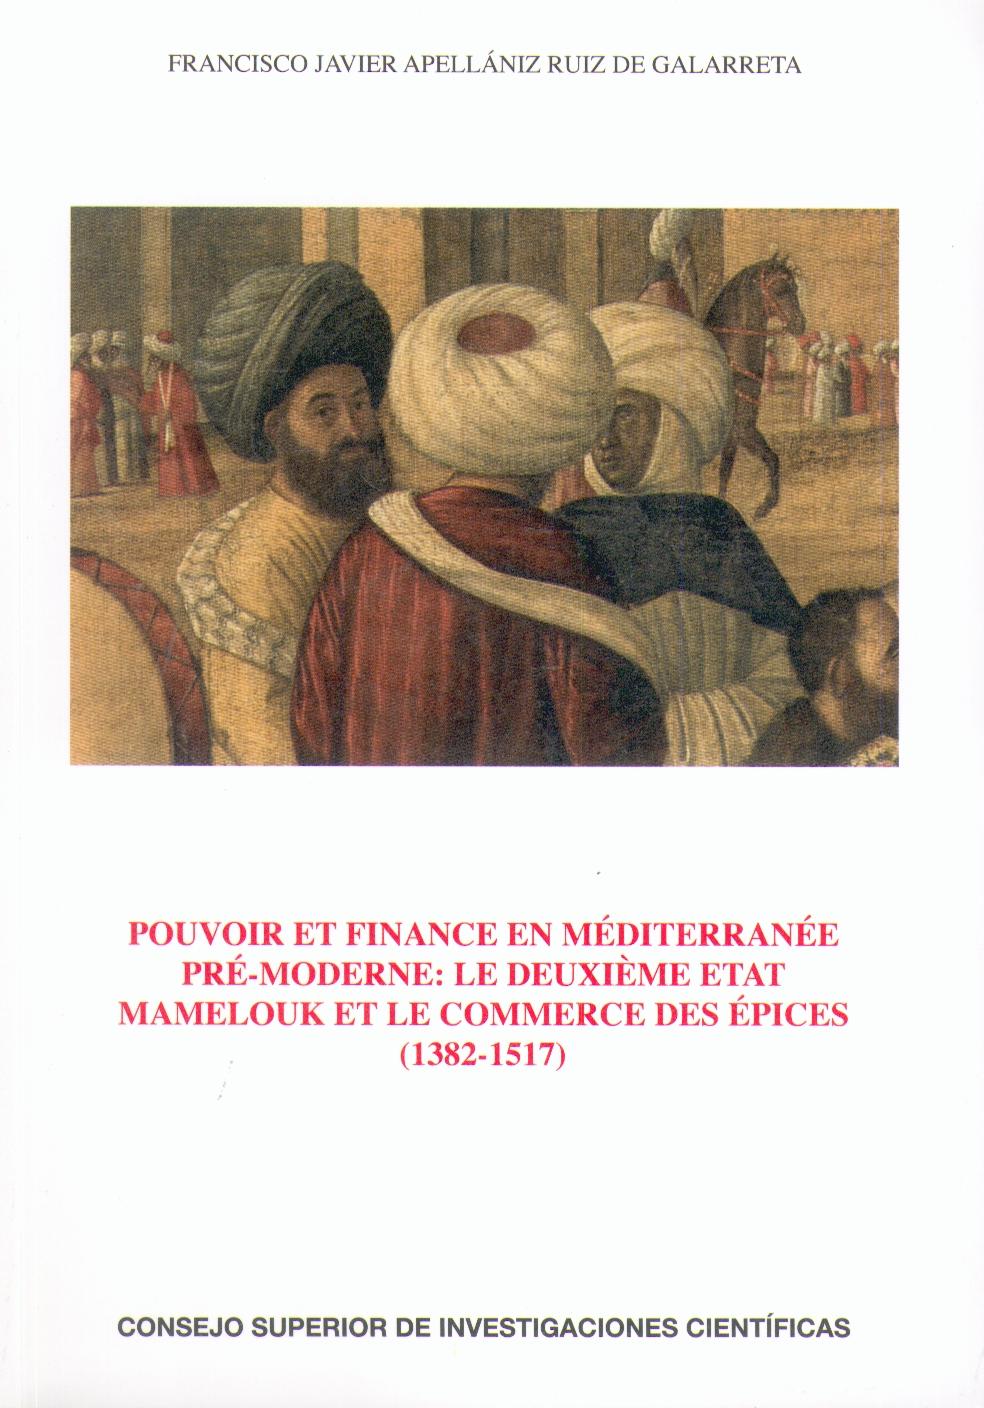 Pouvoir Et Finance en Mediterranee Pre-Moderne "Mamelouk Et le Commerce Des Epices 1382-1517". Mamelouk Et le Commerce Des Epices 1382-1517